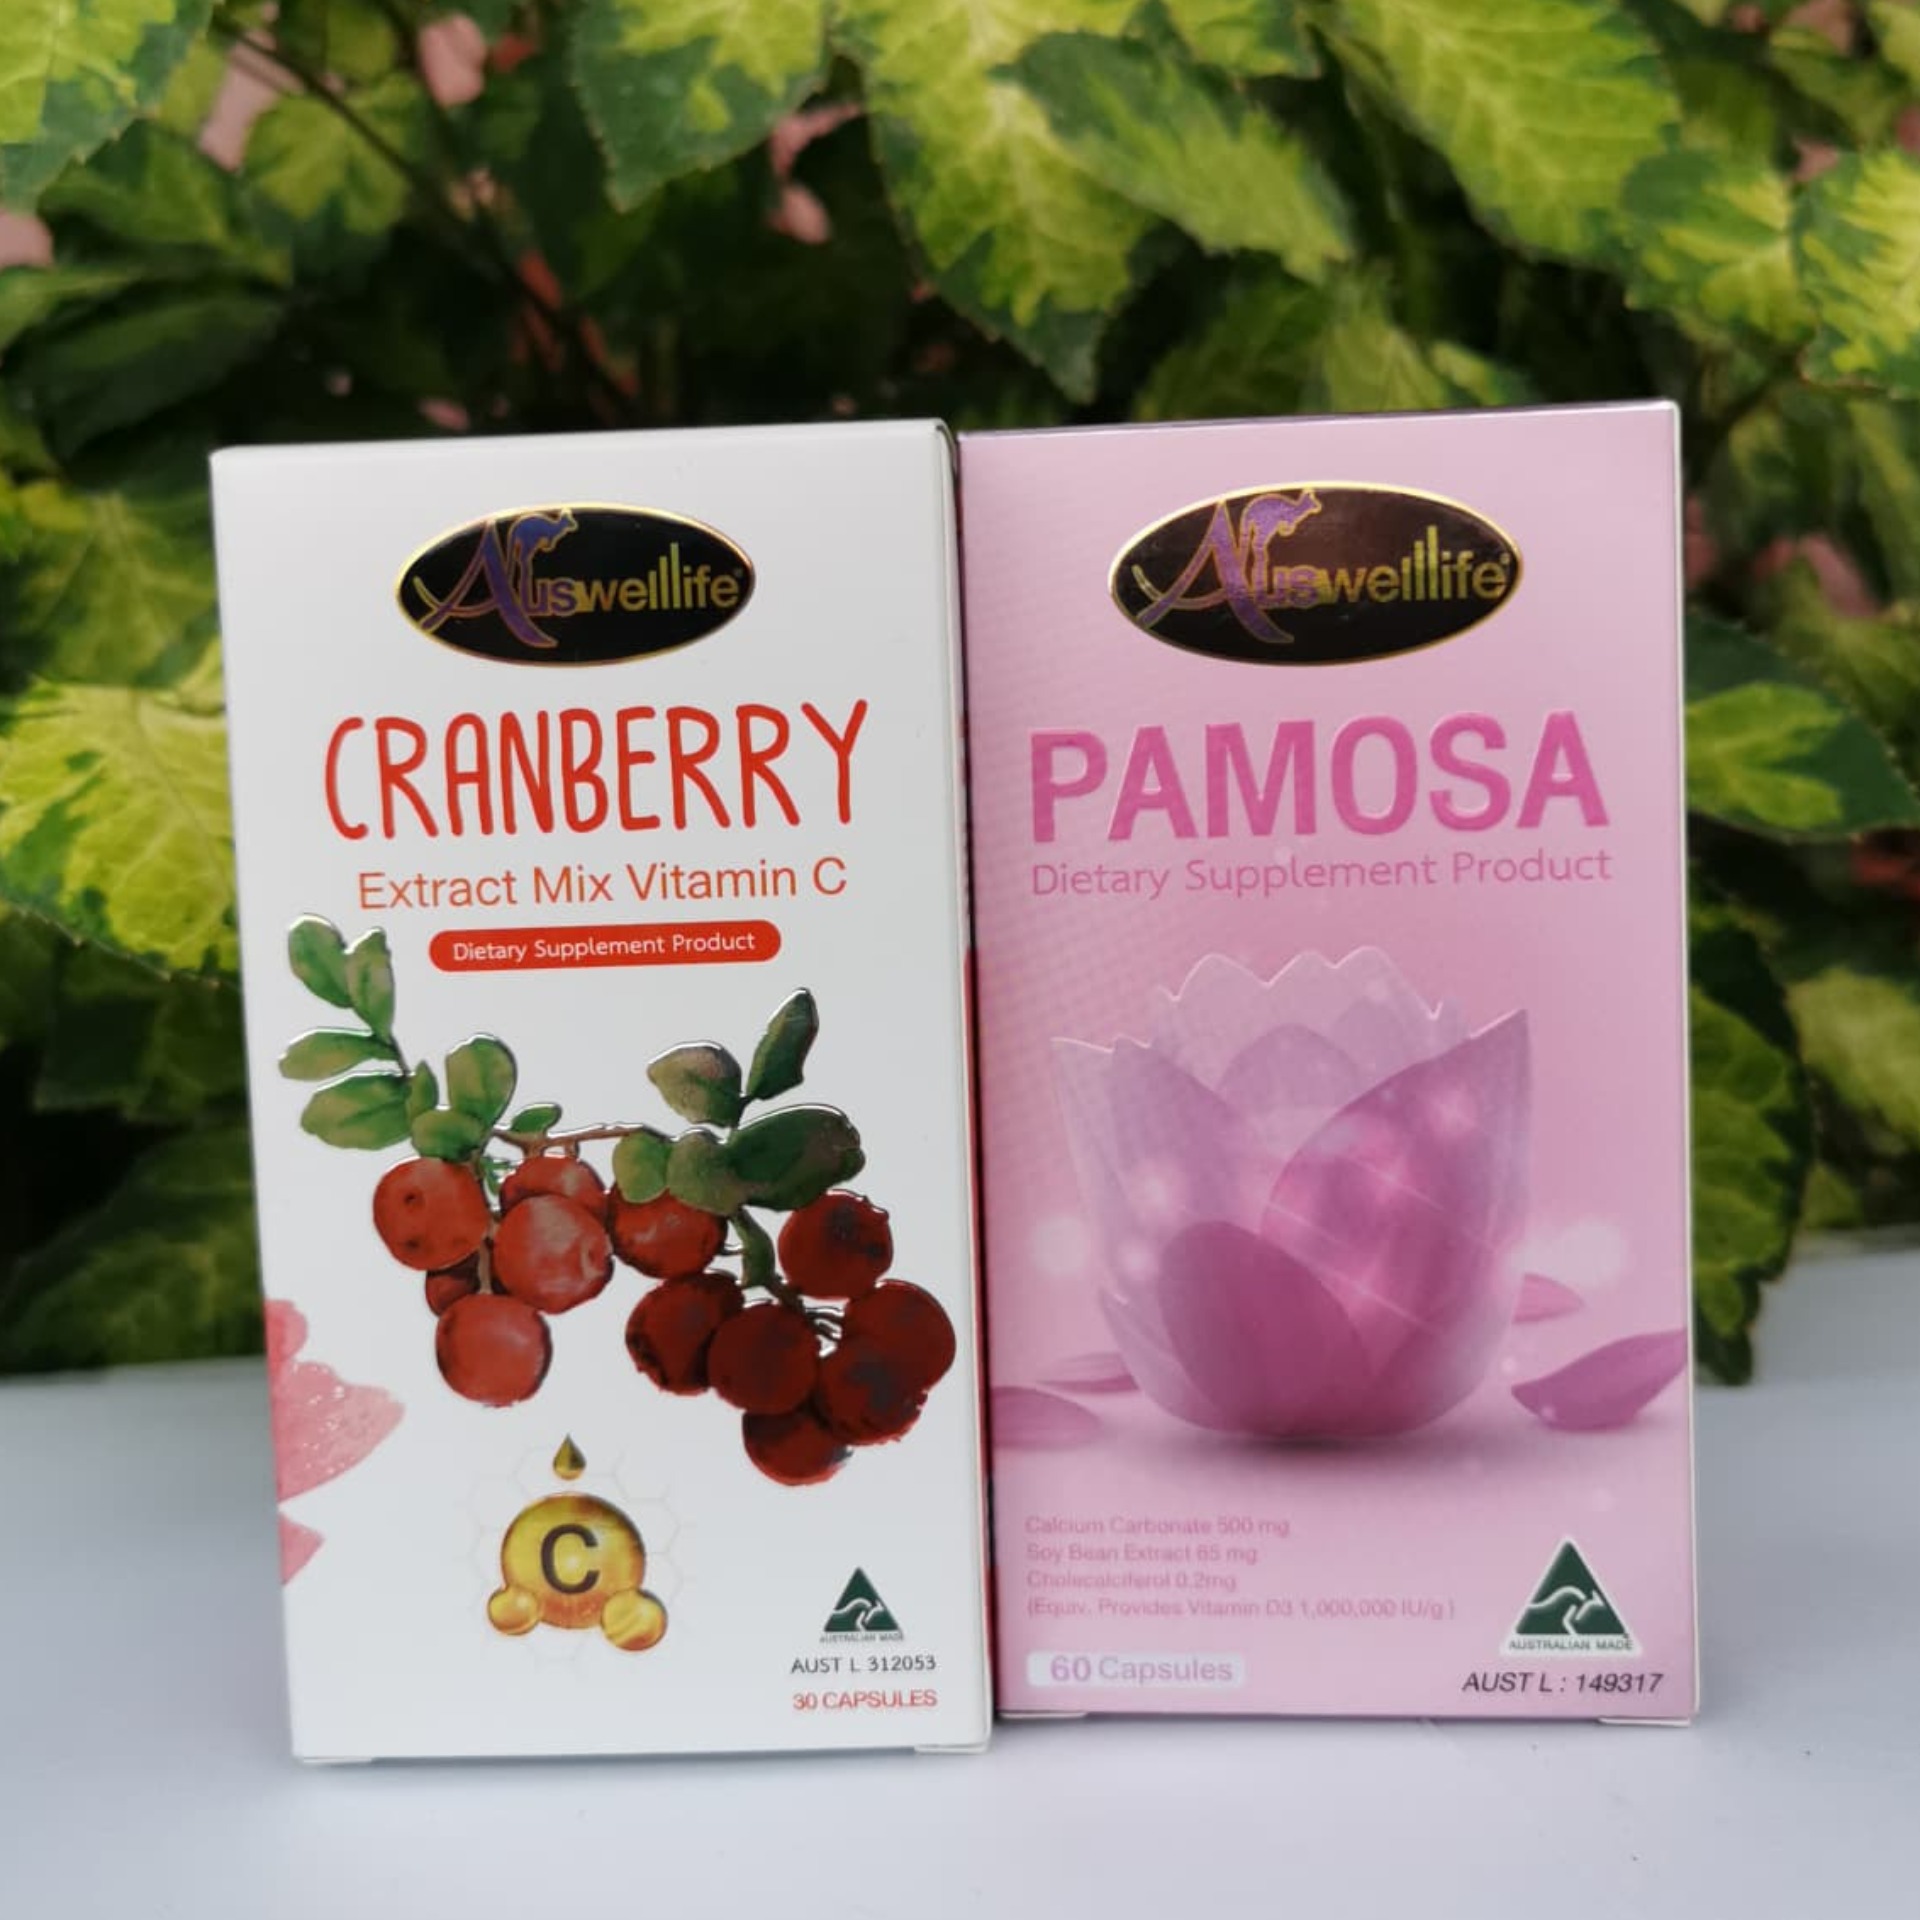 (ส่งฟรี KERRY ของแท้ 100%) คู่จิ้น จิ๋นหอม! Auswelllife Cranberry Mix Vit C สูตรใหม่ แครนเบอร์รี่ผสมวิตามินซี ( 1 กระปุก 30 แคปซูล ) + Auswelllife Pamosa ออสเวลไลฟ์ พาโมซ่า อาหารเสริมสำหรับผู้หญิง ( 1 กระปุก 30 แคปซูล )